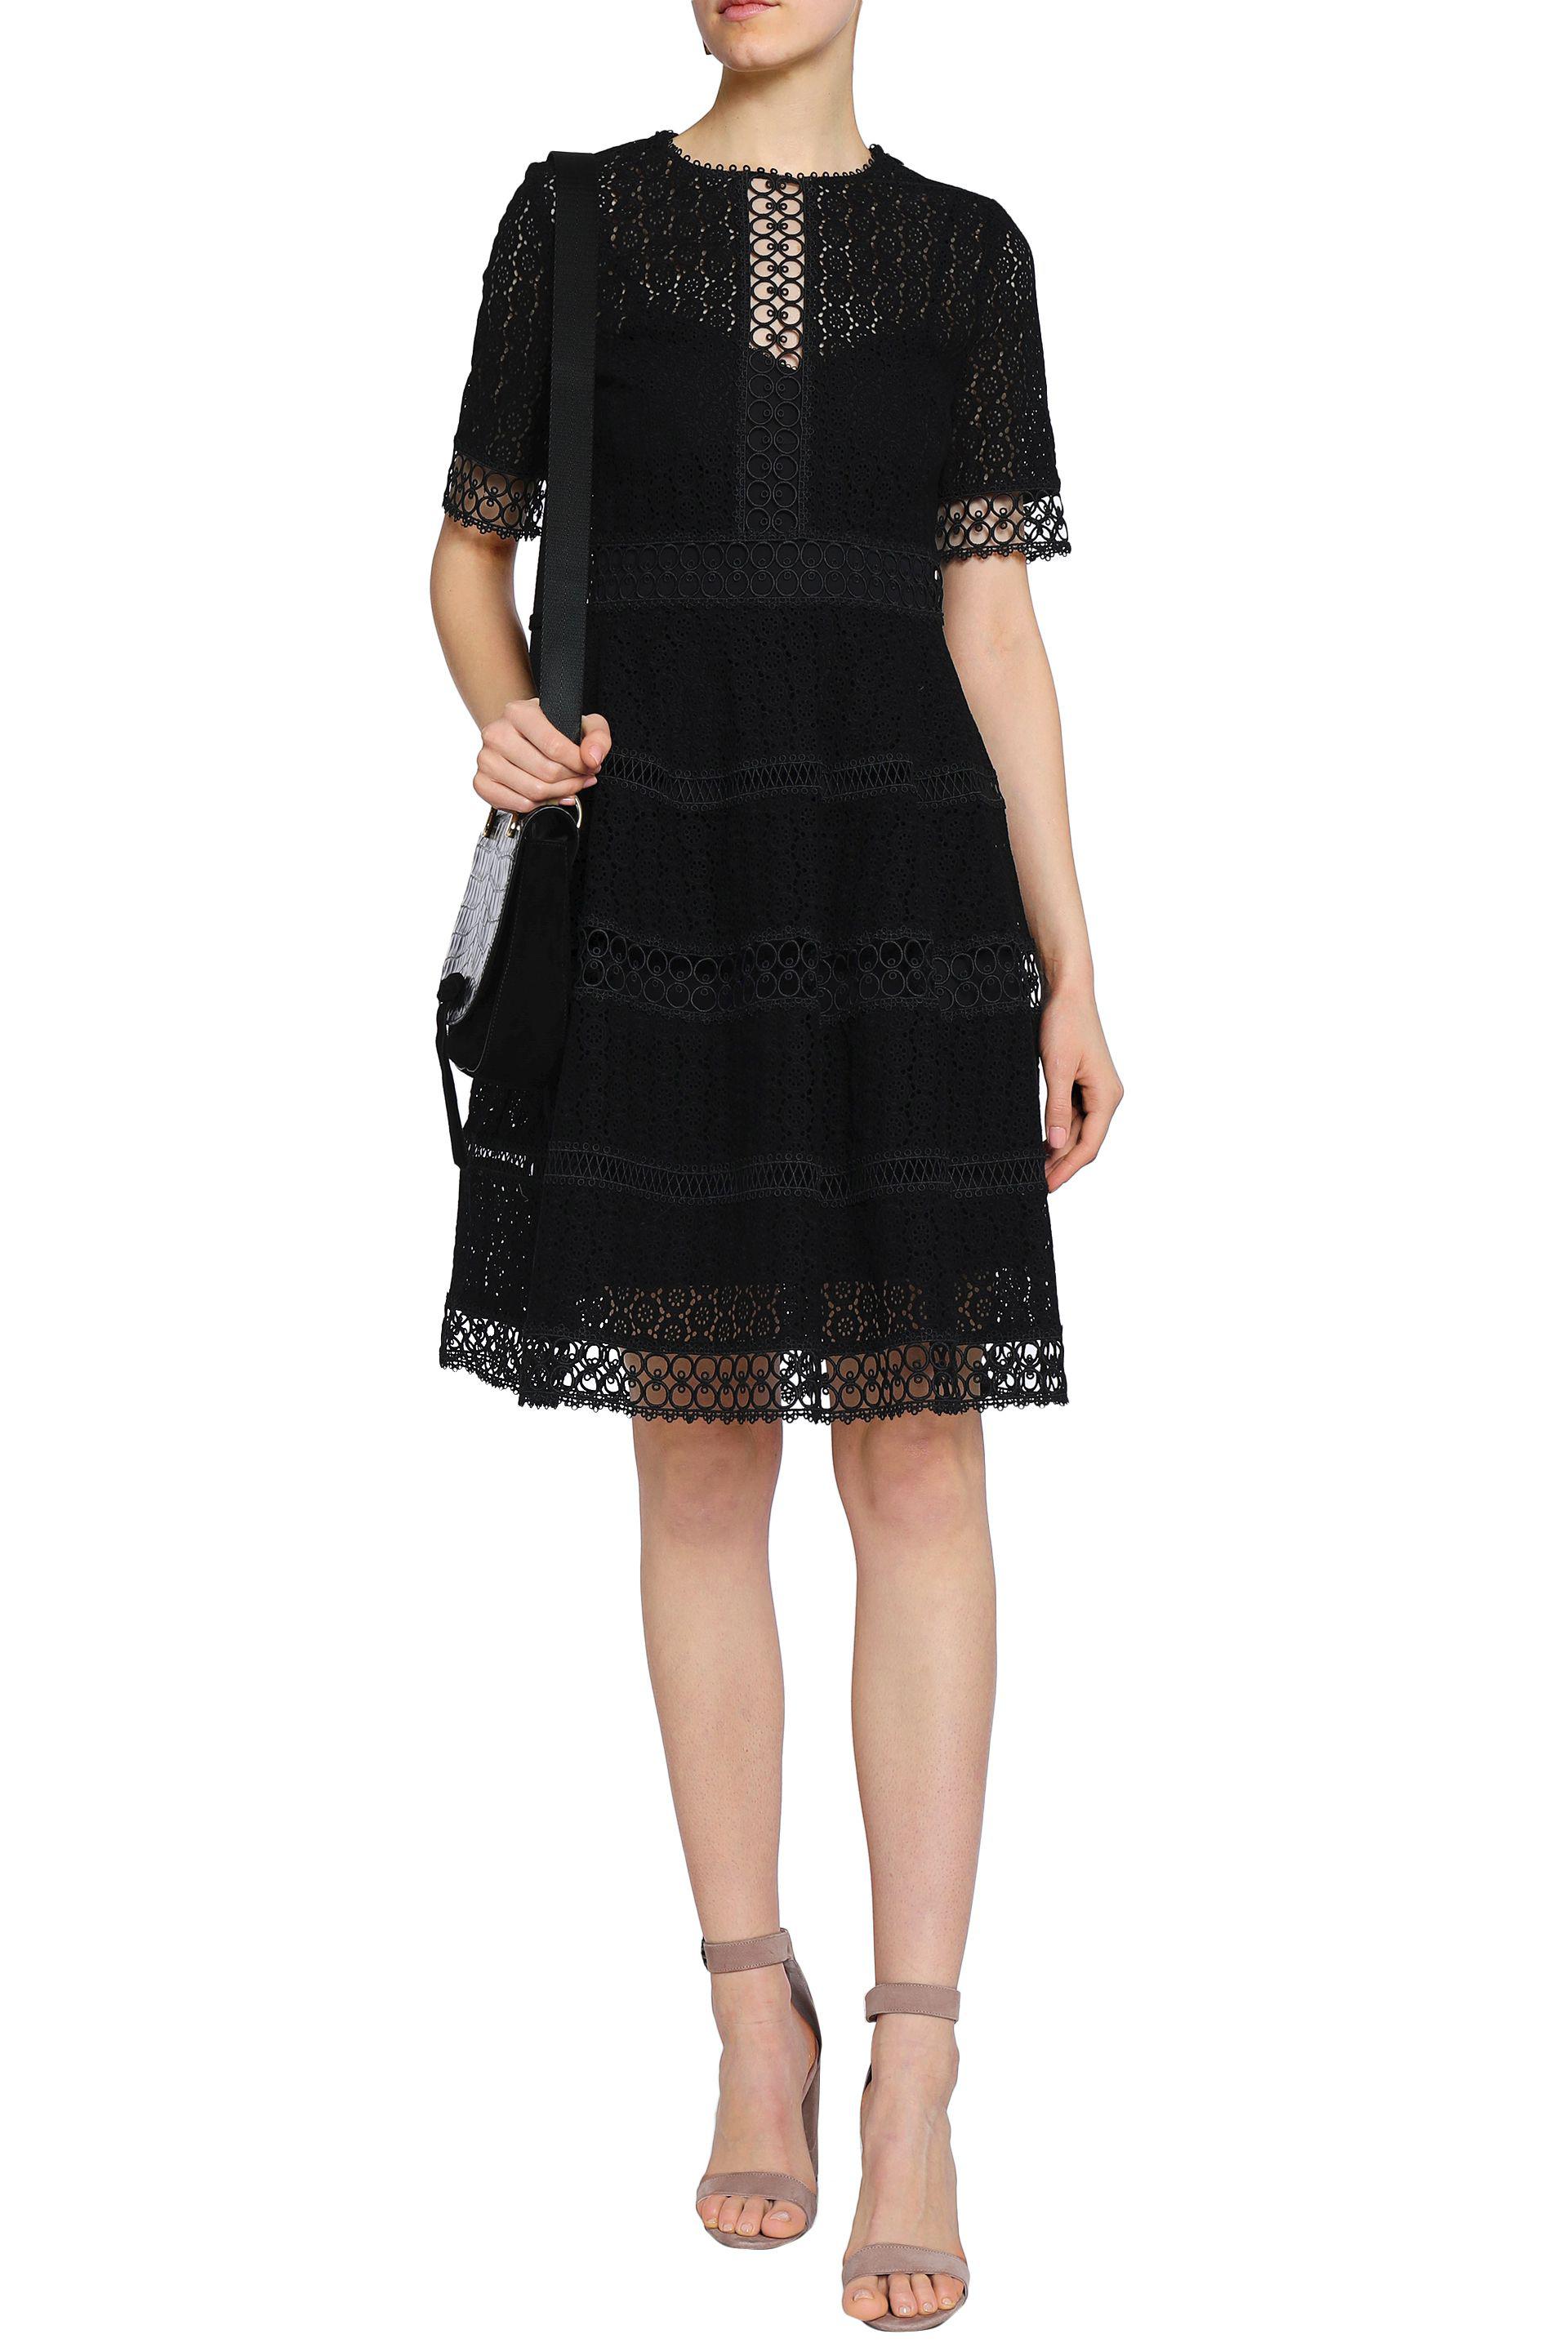 Zimmermann Cotton Crocheted Lace Dress in Black - Lyst